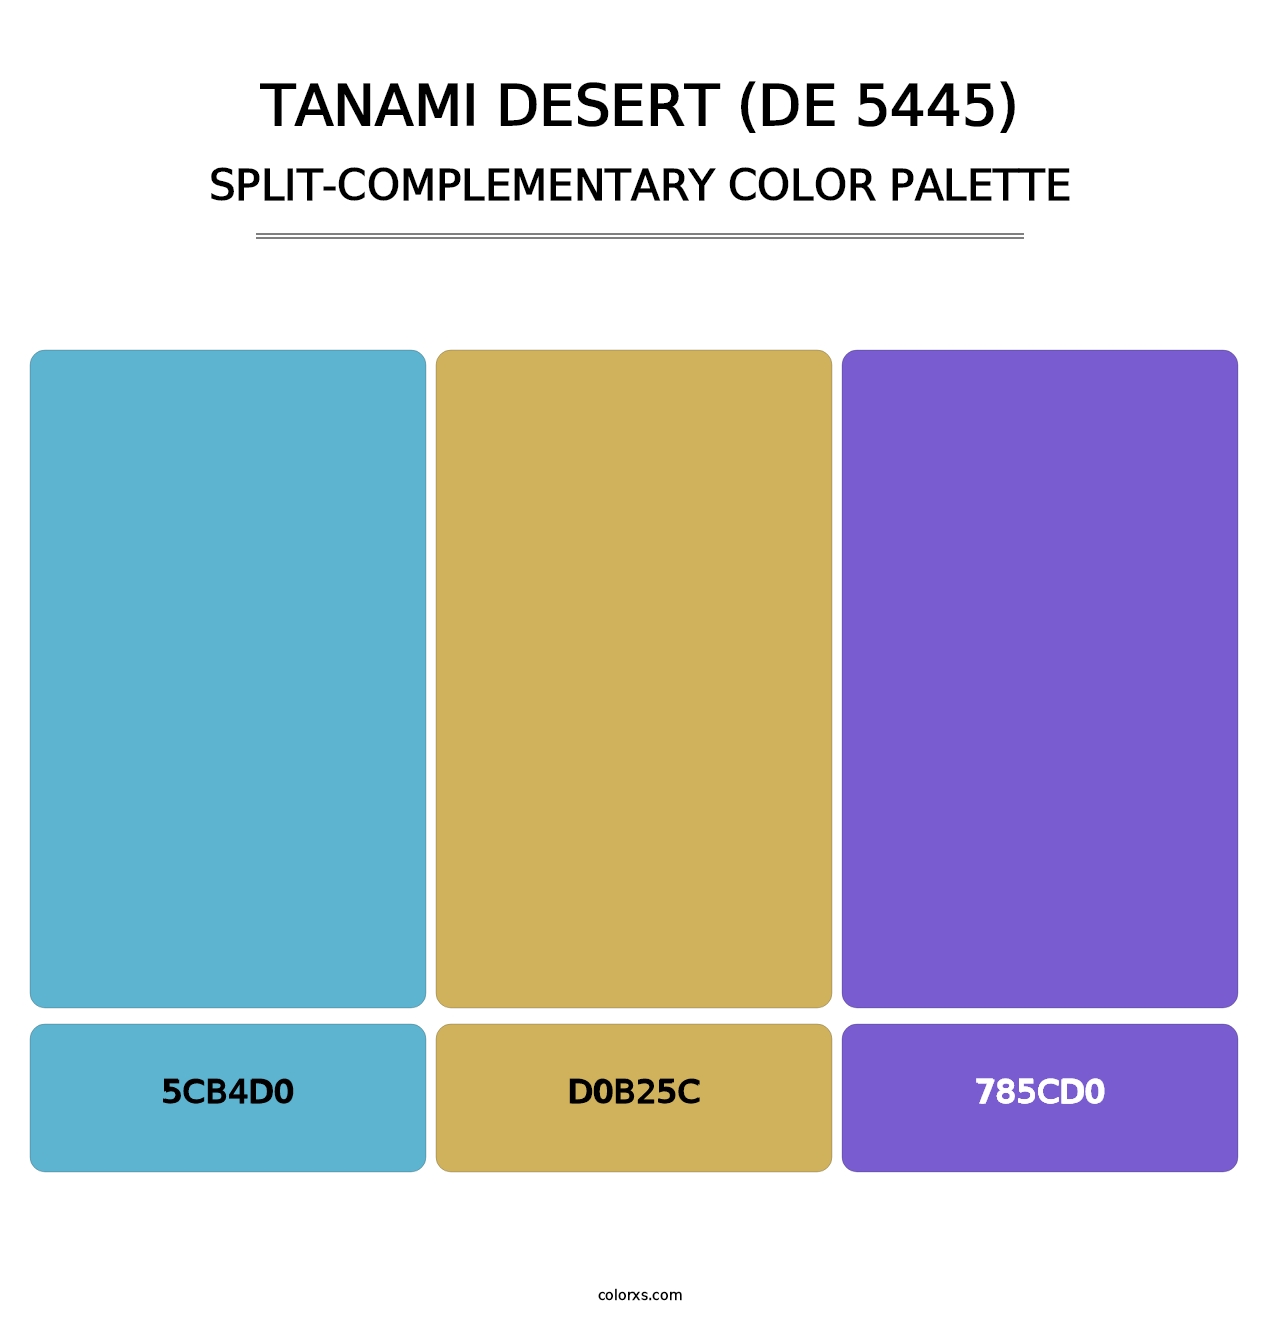 Tanami Desert (DE 5445) - Split-Complementary Color Palette